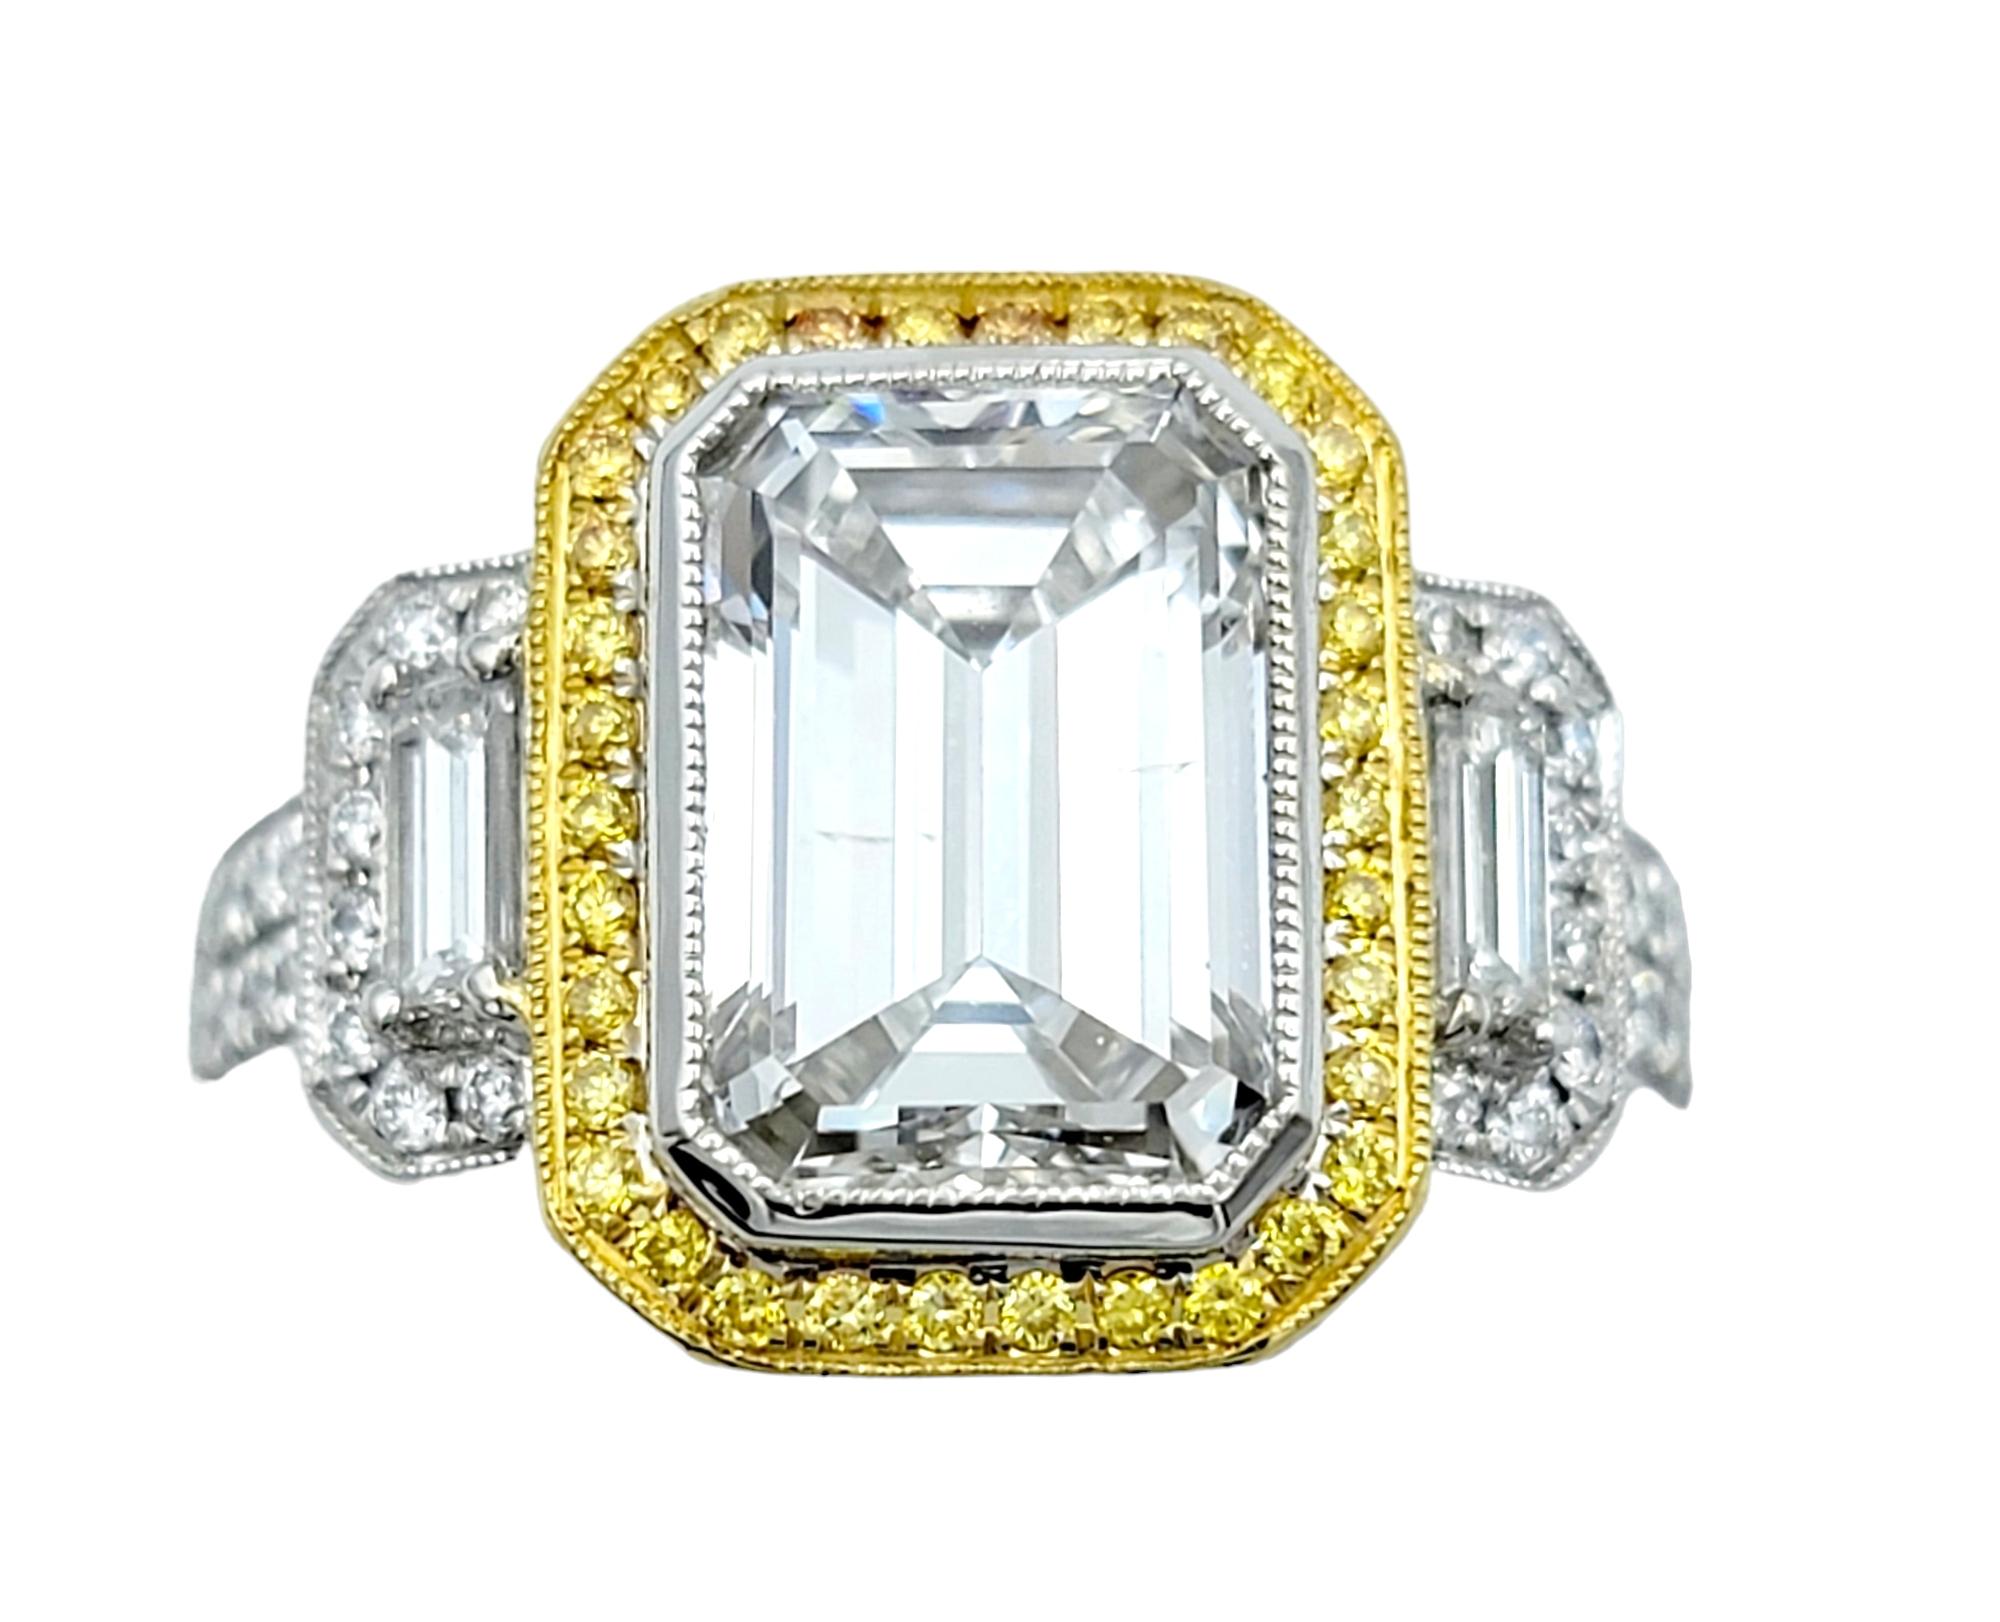 Taille de lla bague : 6

Cette incroyable bague de fiançailles Simon G. 3,50 carats, diamant taille émeraude, est un chef-d'œuvre absolu de la joaillerie, fusionnant l'élégance classique et le charme contemporain. 

La pièce maîtresse, un diamant de